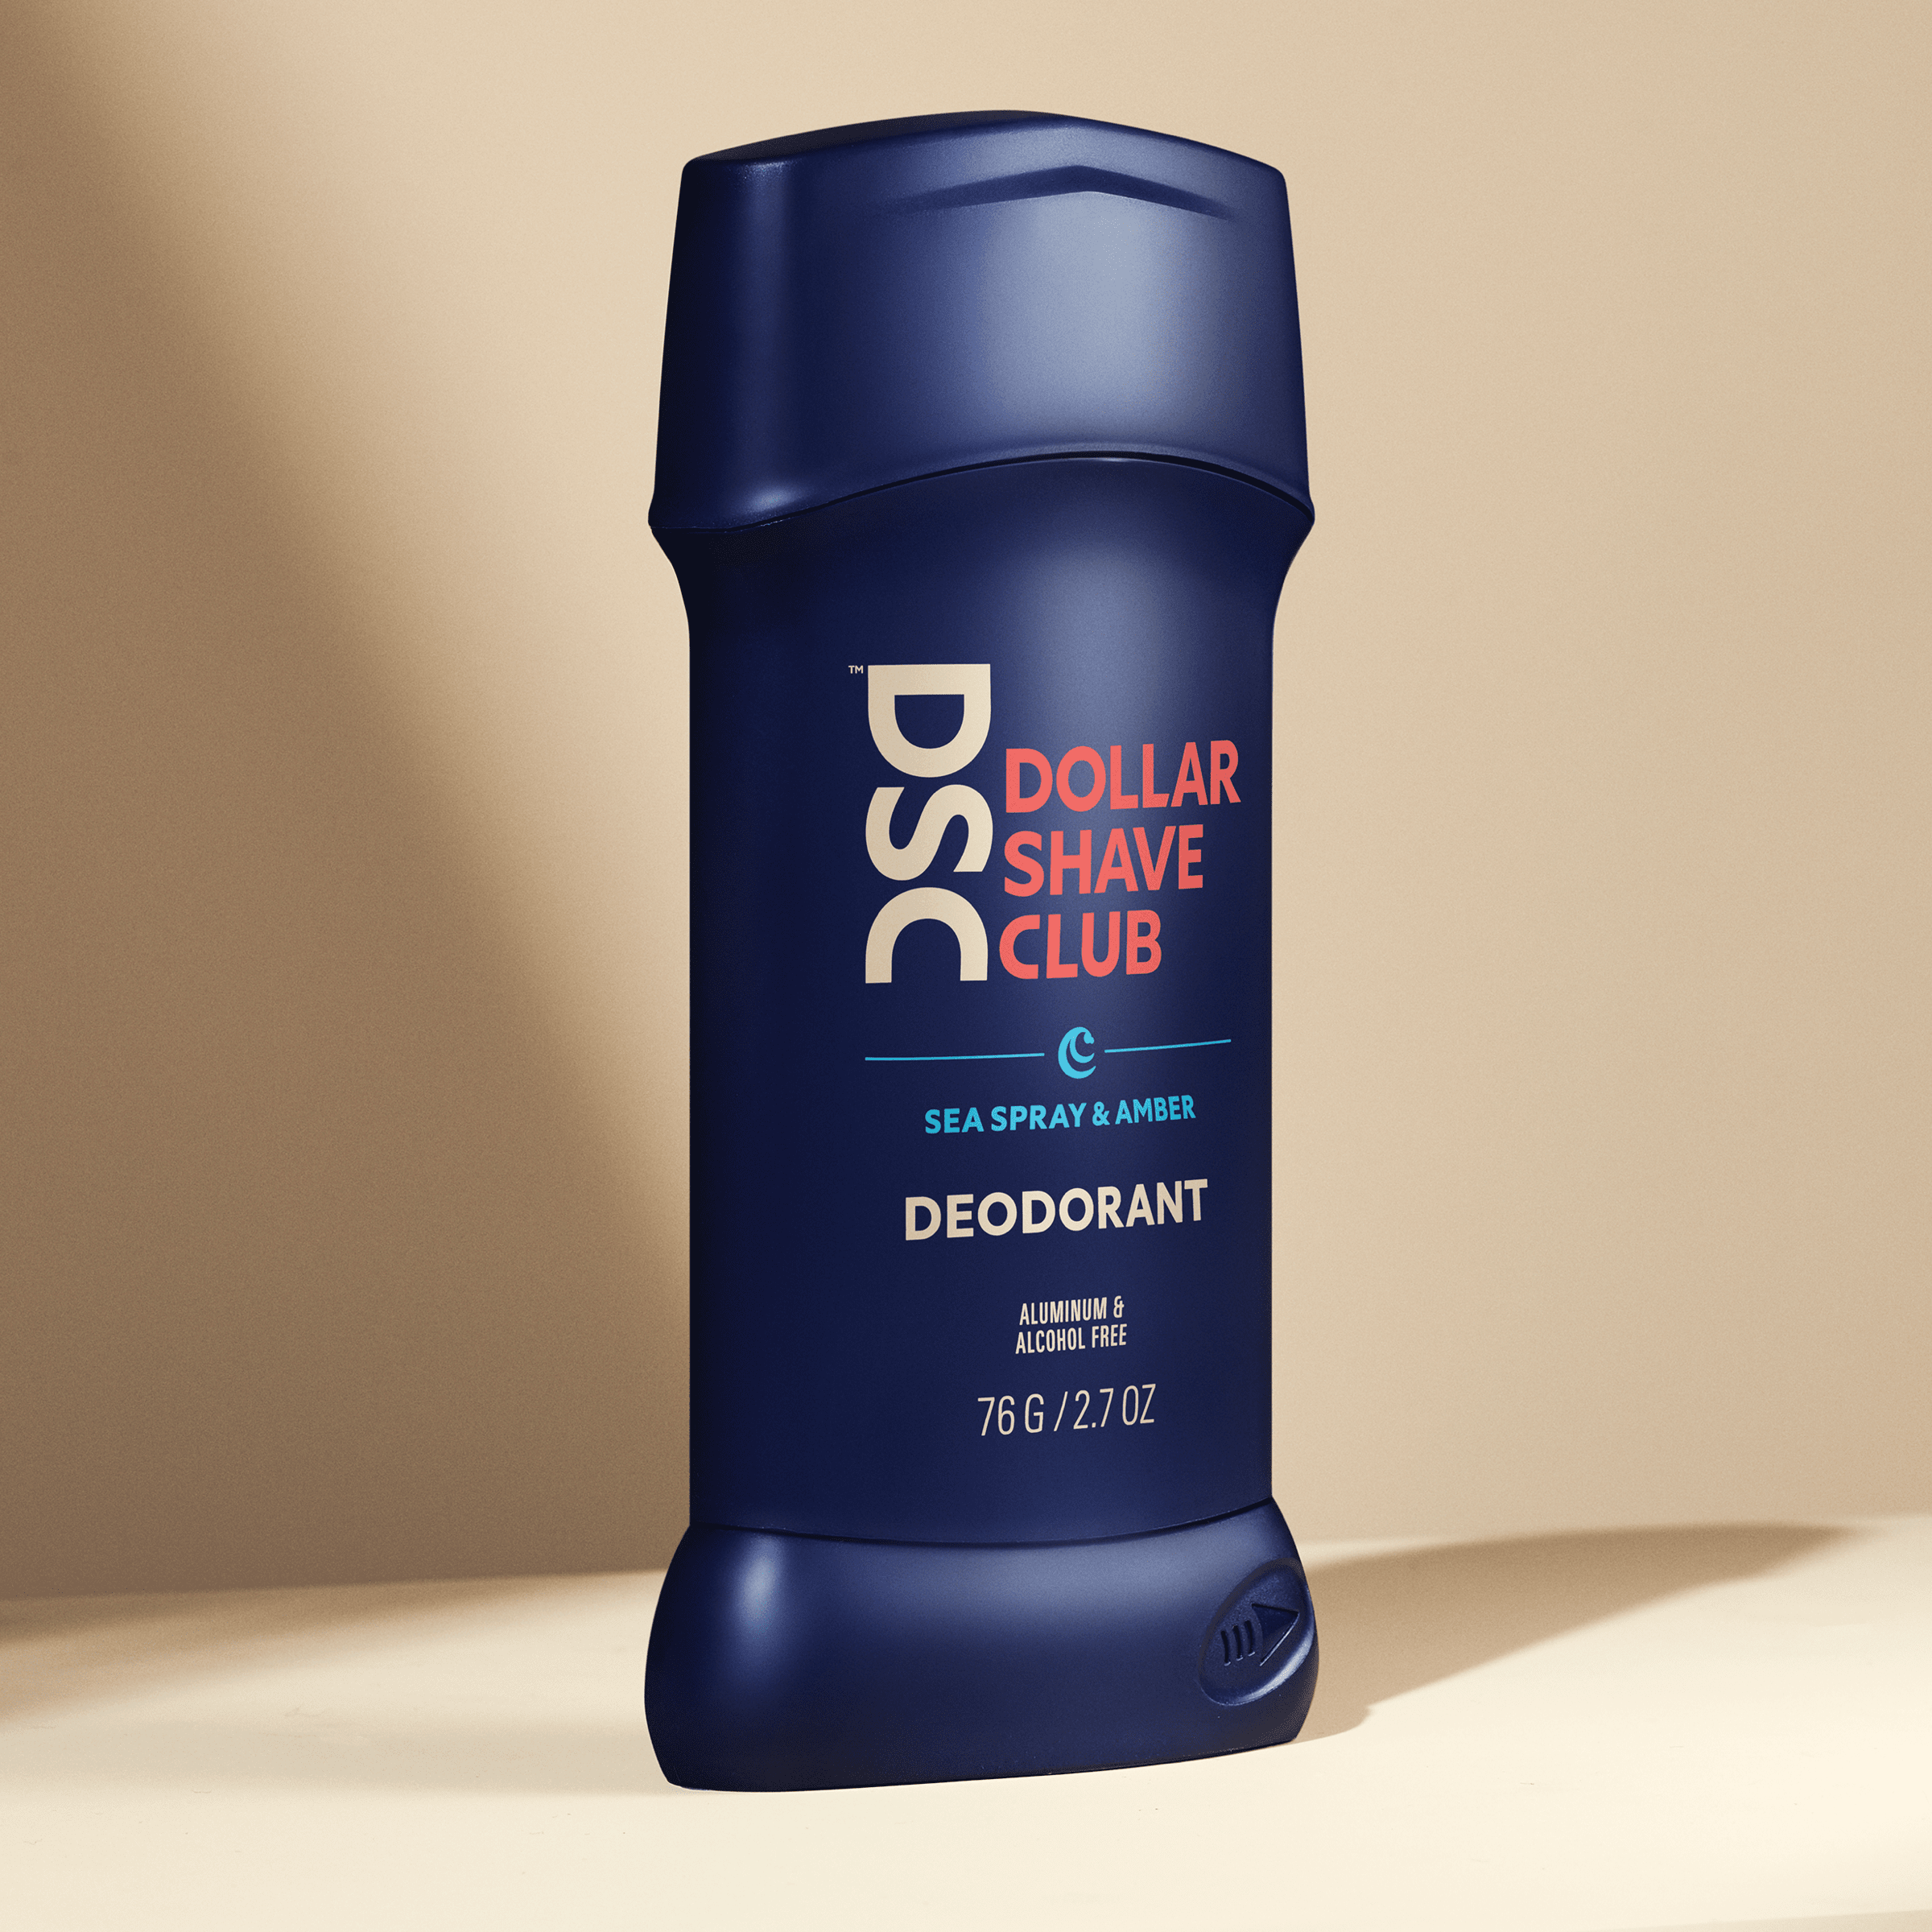 Dollar Shave Club Deodorant Sea Spray Amber against tan backdrop.